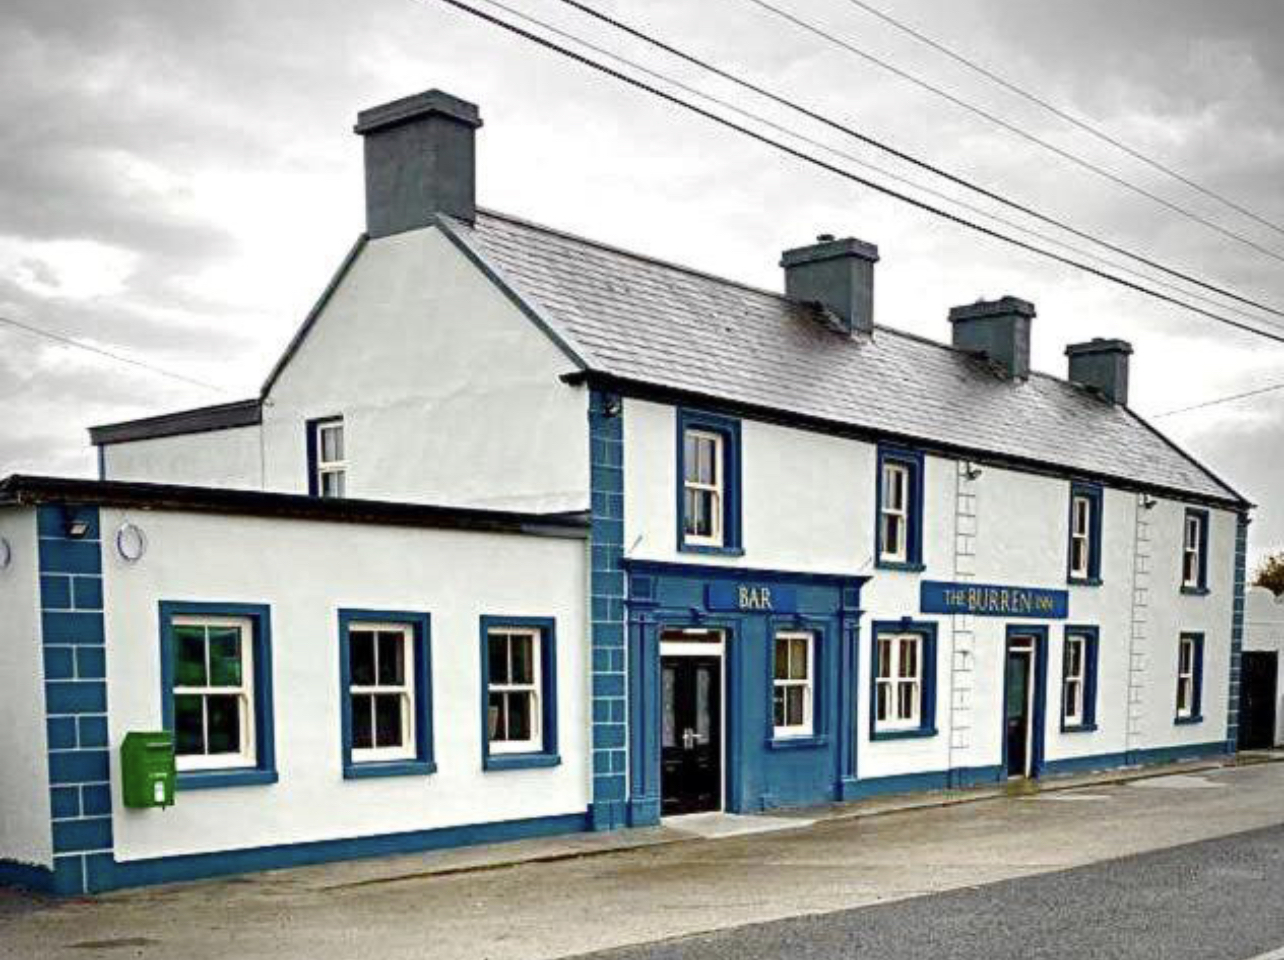 The Burren Inn | Head West Ireland